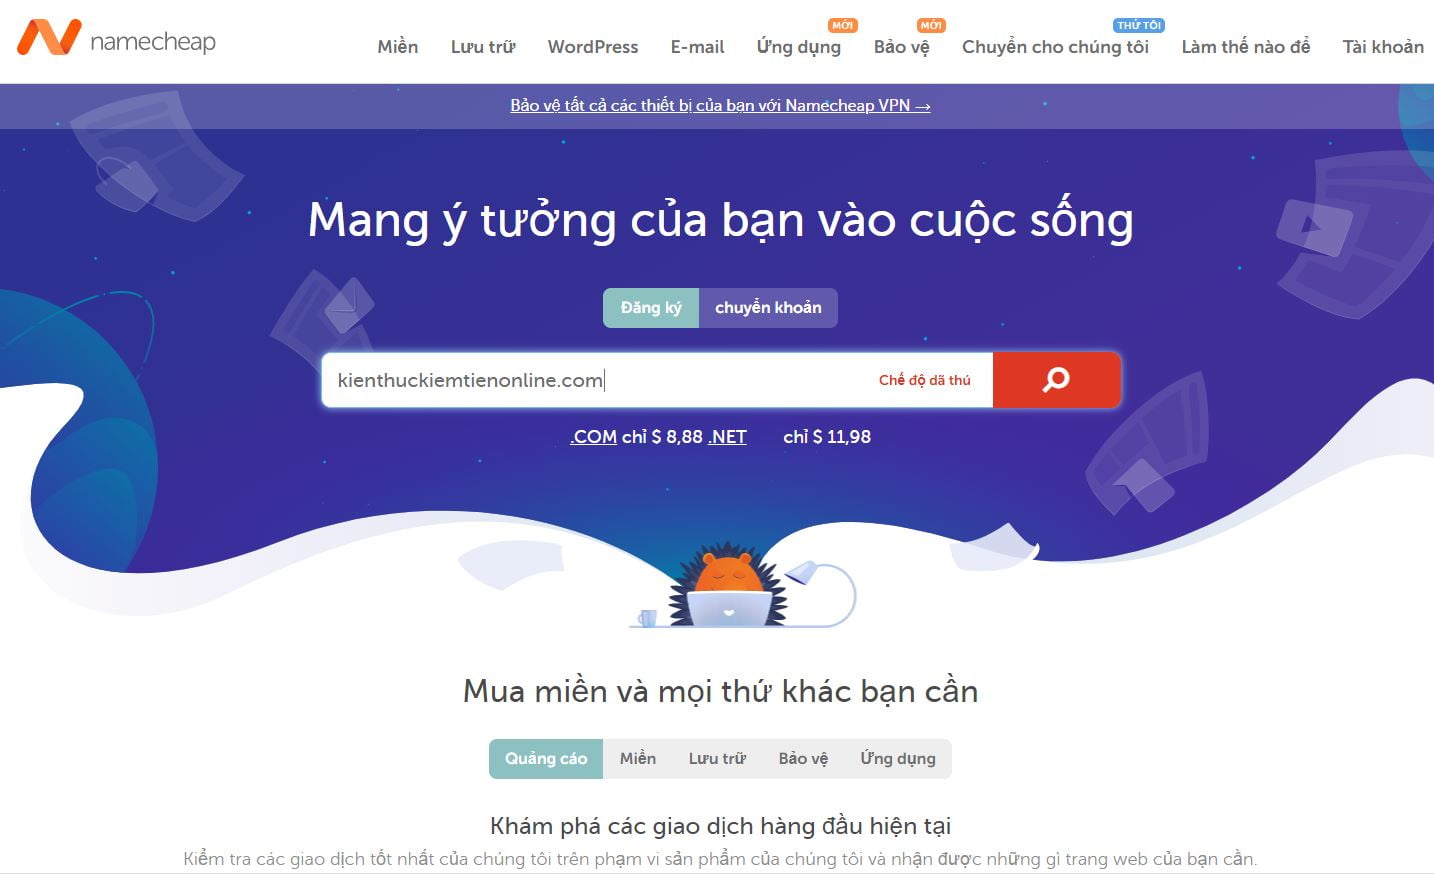 Huong dan mua domain tai Namecheap 3